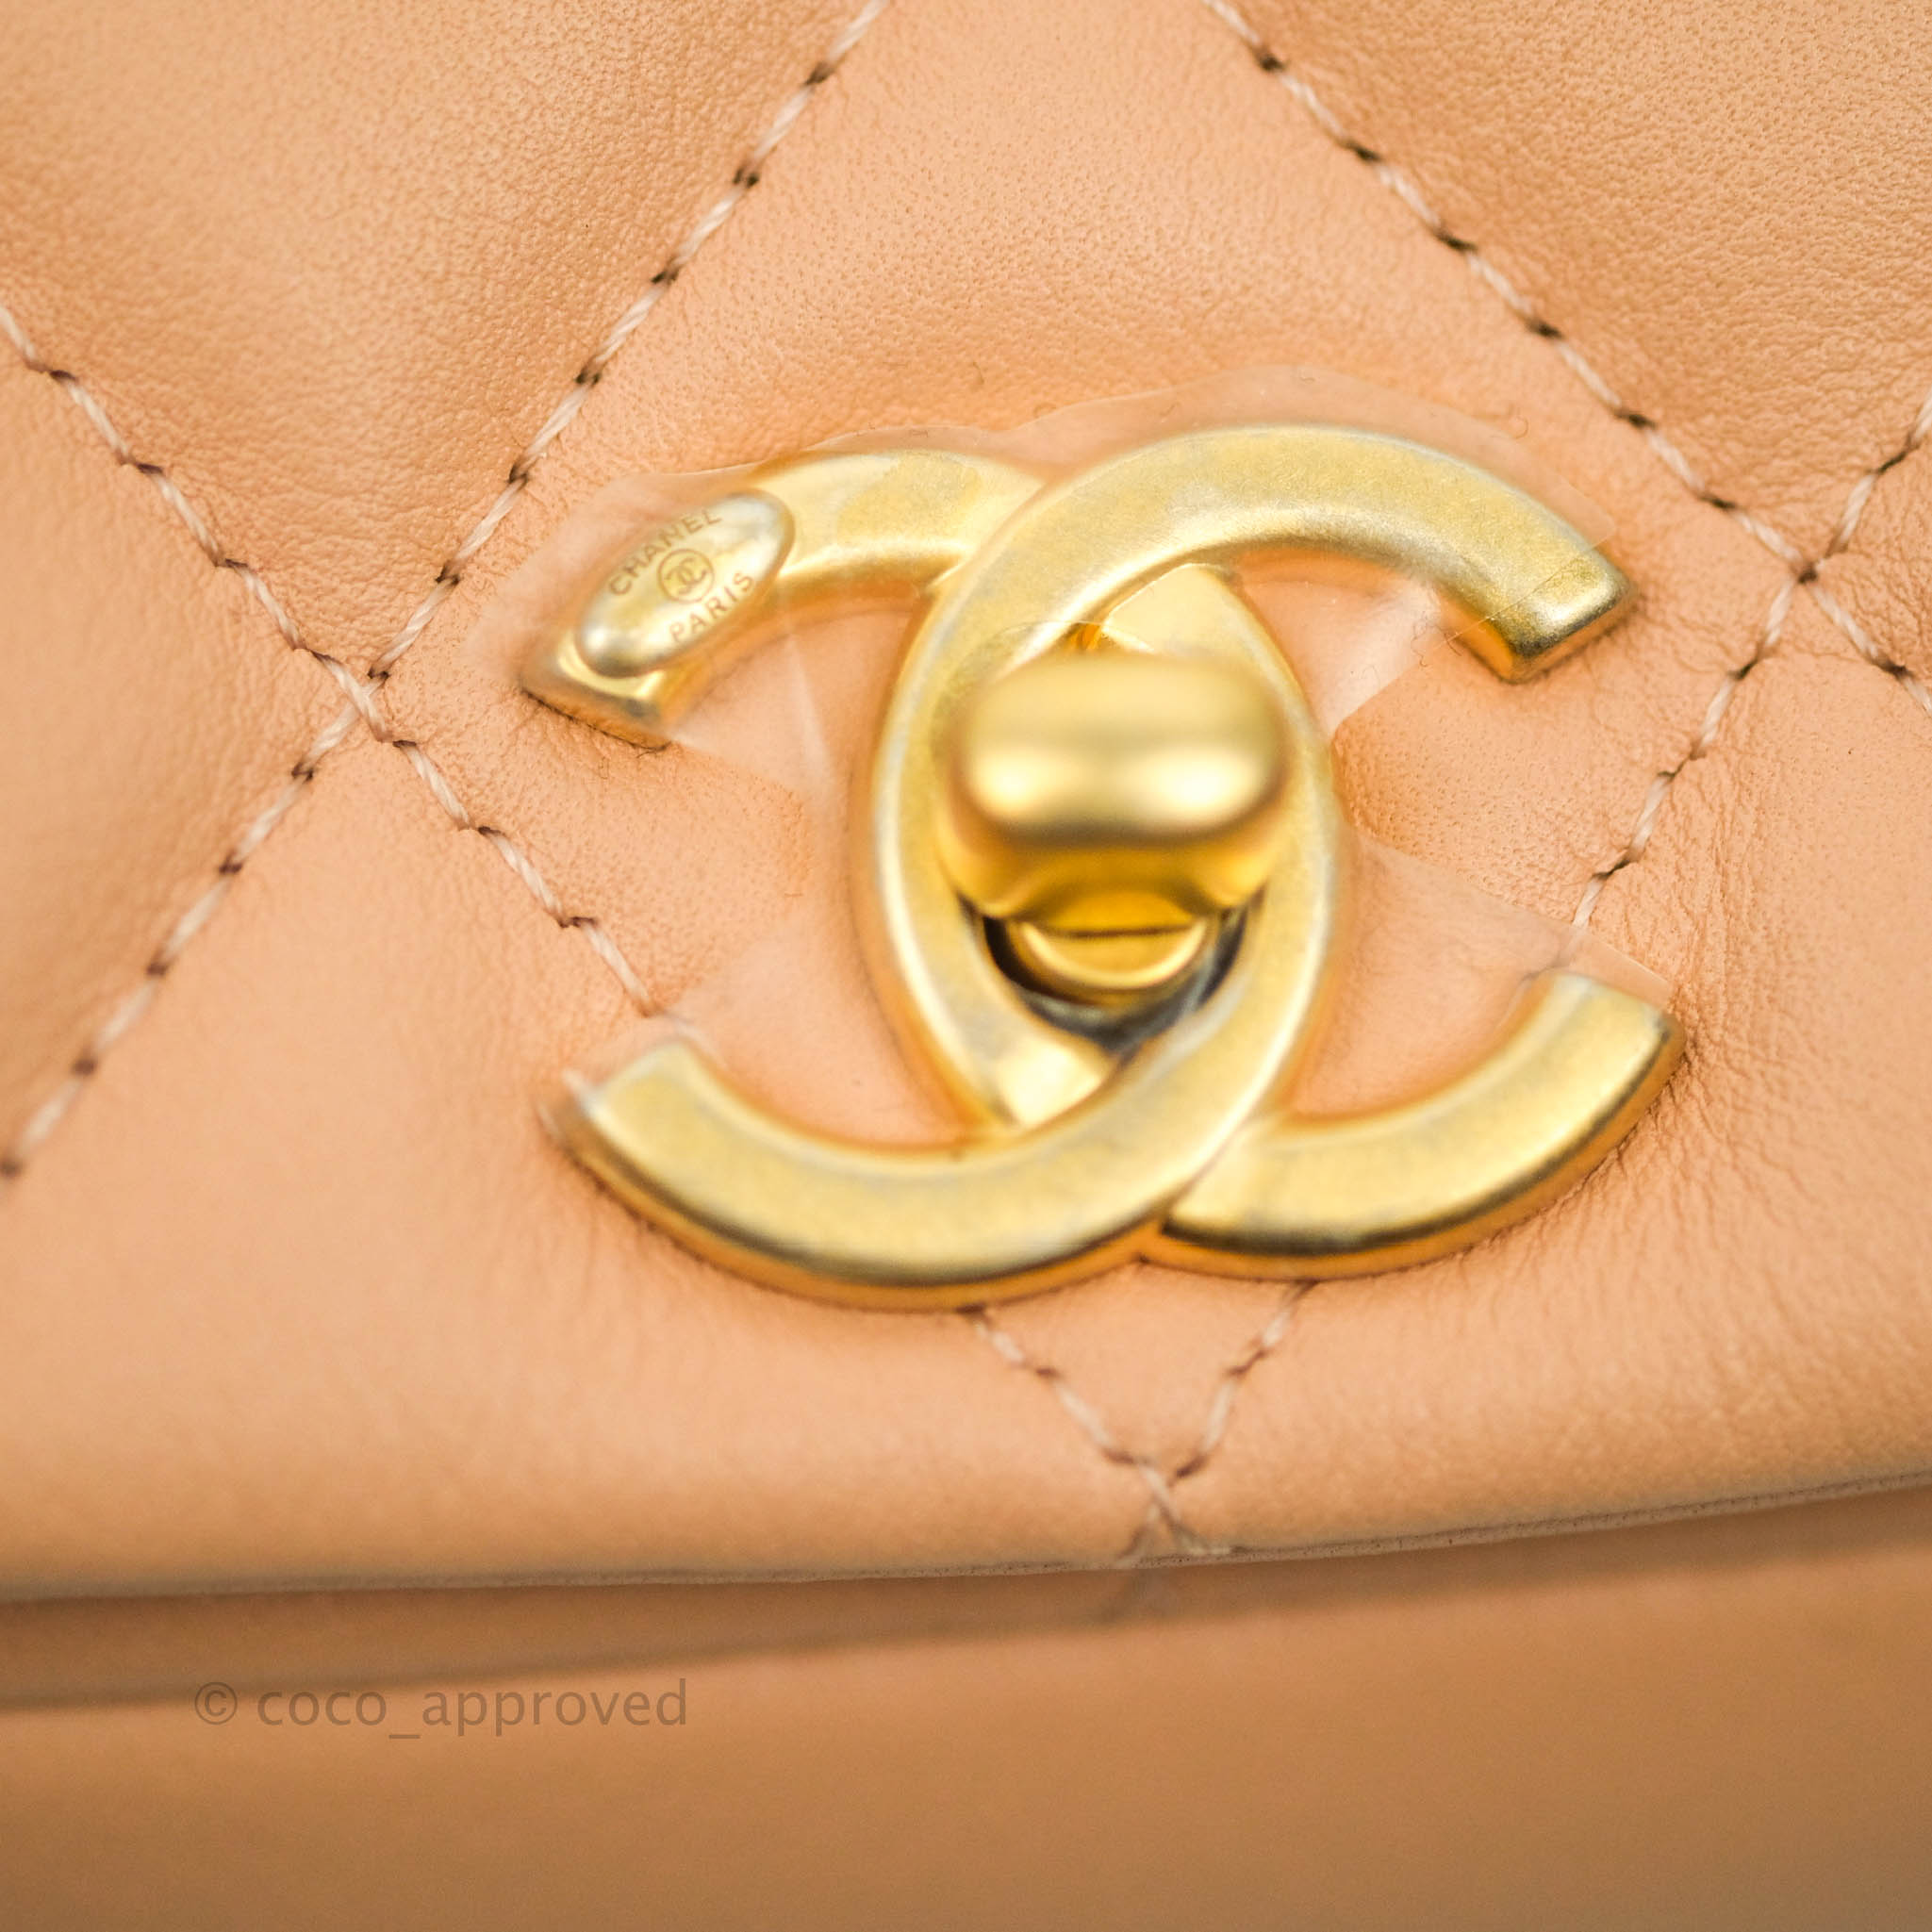 Chanel 19 Hobo Bag Beige Aged Calfskin Brushed Gold Hardware